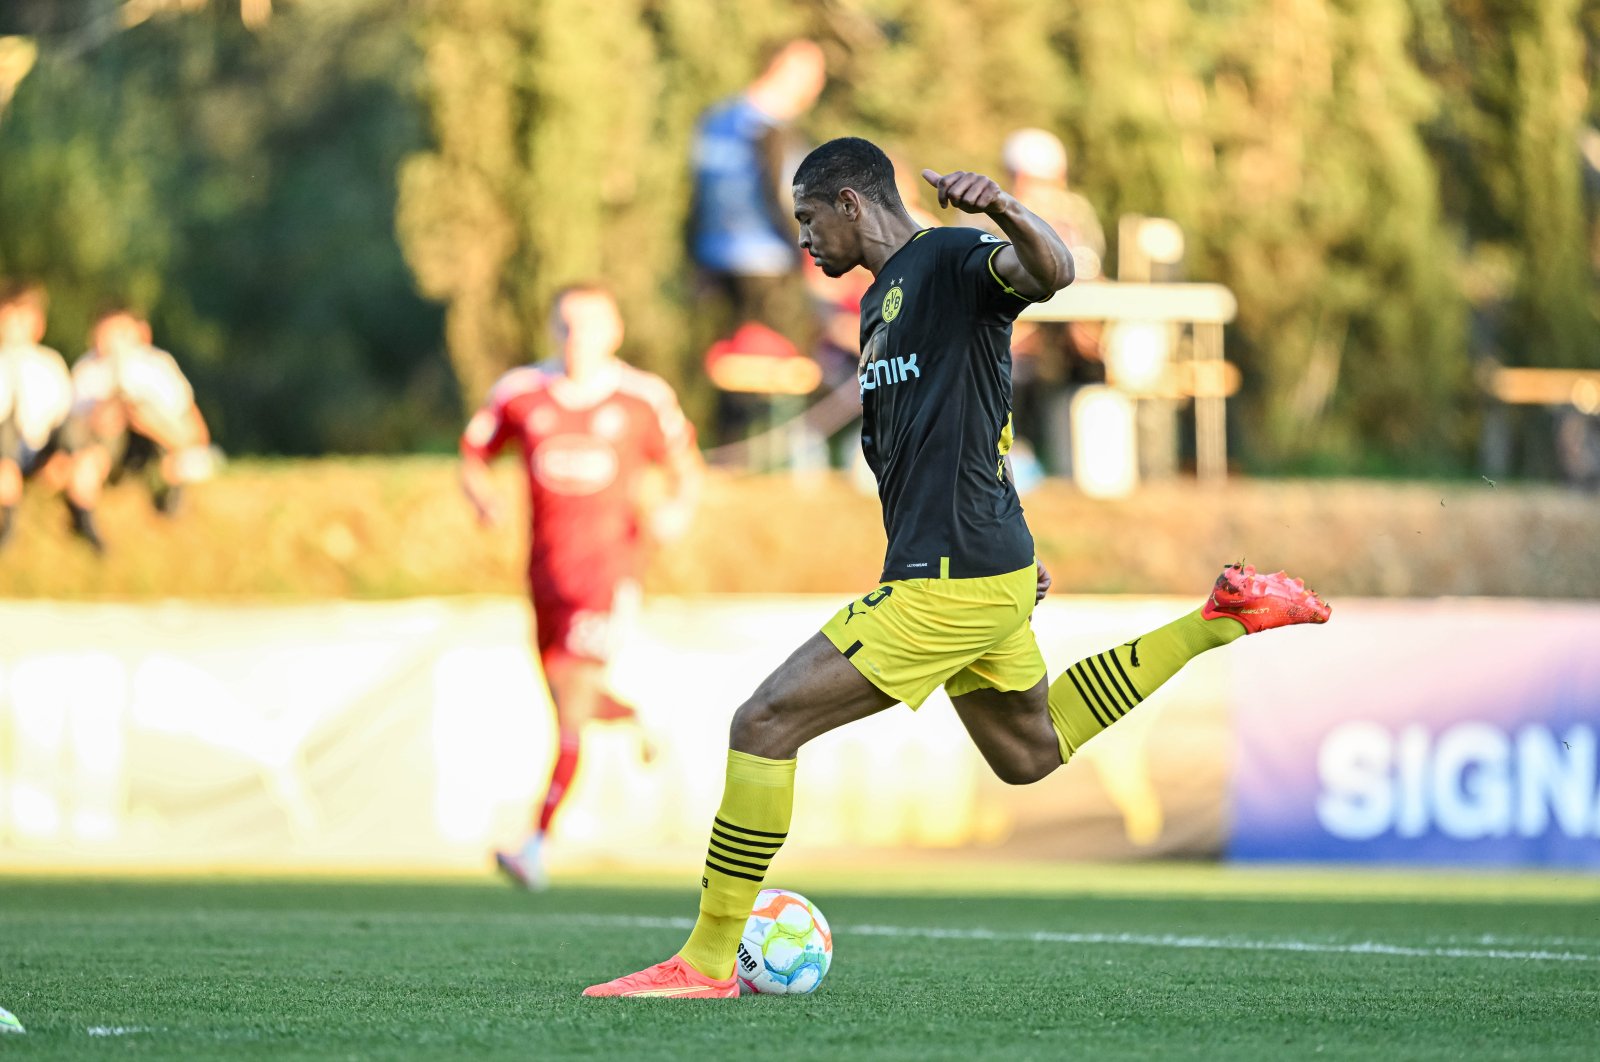 Haller makes first Dortmund appearance after cancer battle